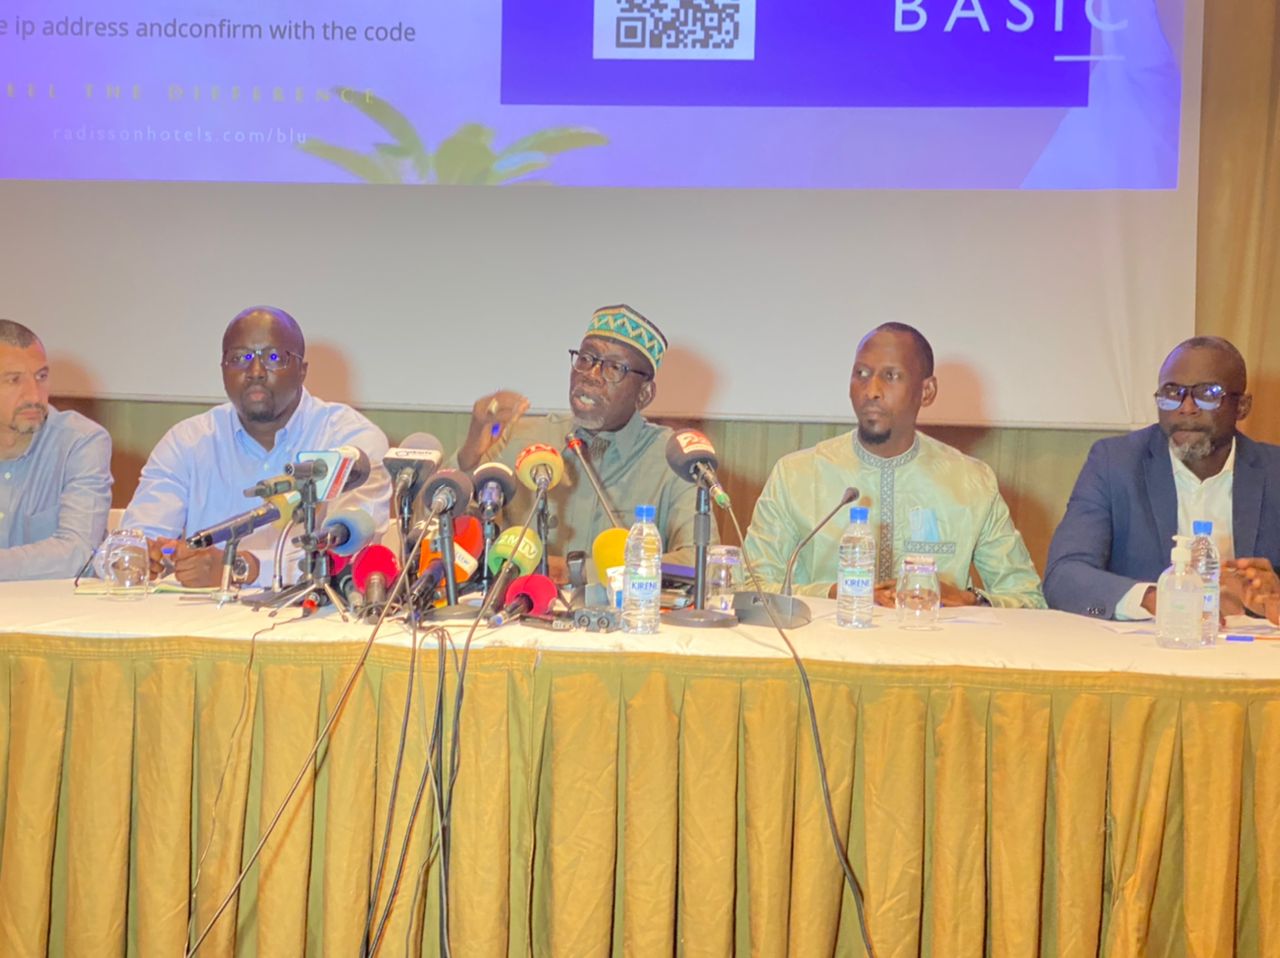 L'Association des Meuniers Industriels du Sénégal (AMIS) réclame 10 milliards à l'État